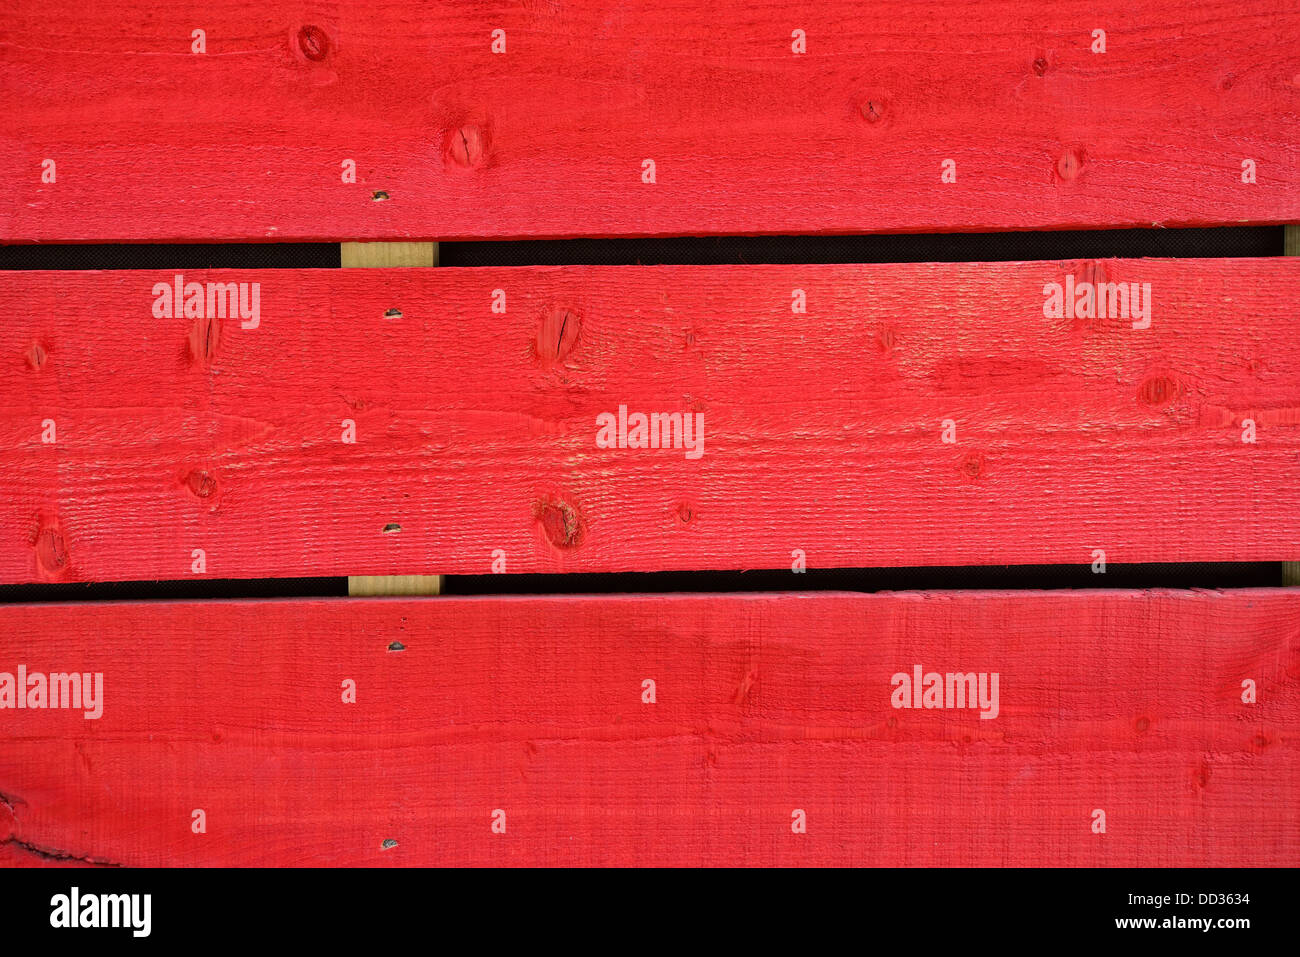 Des planches de bois coloré en rouge Banque D'Images